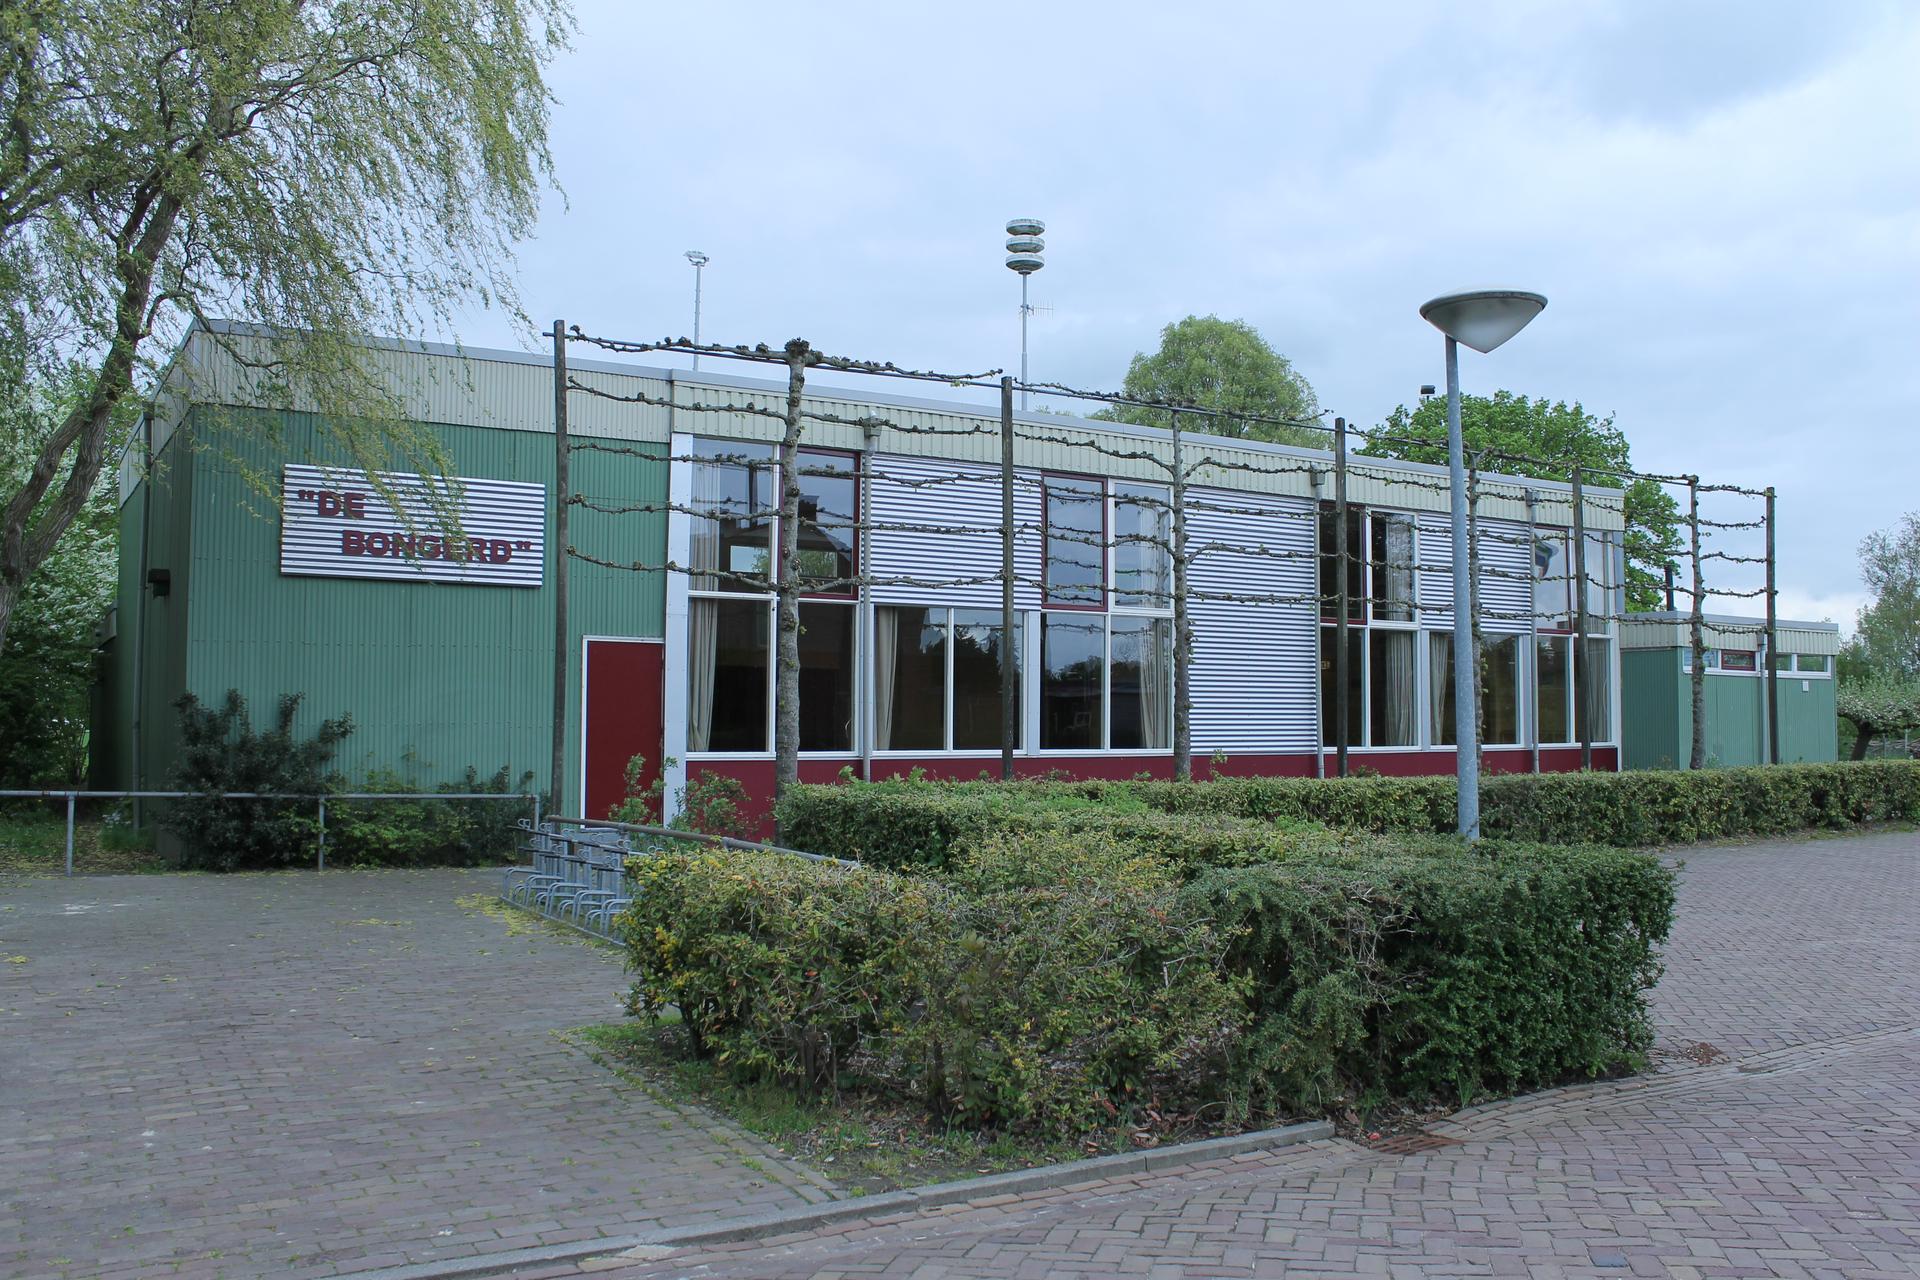 Gymzaal Woltersum